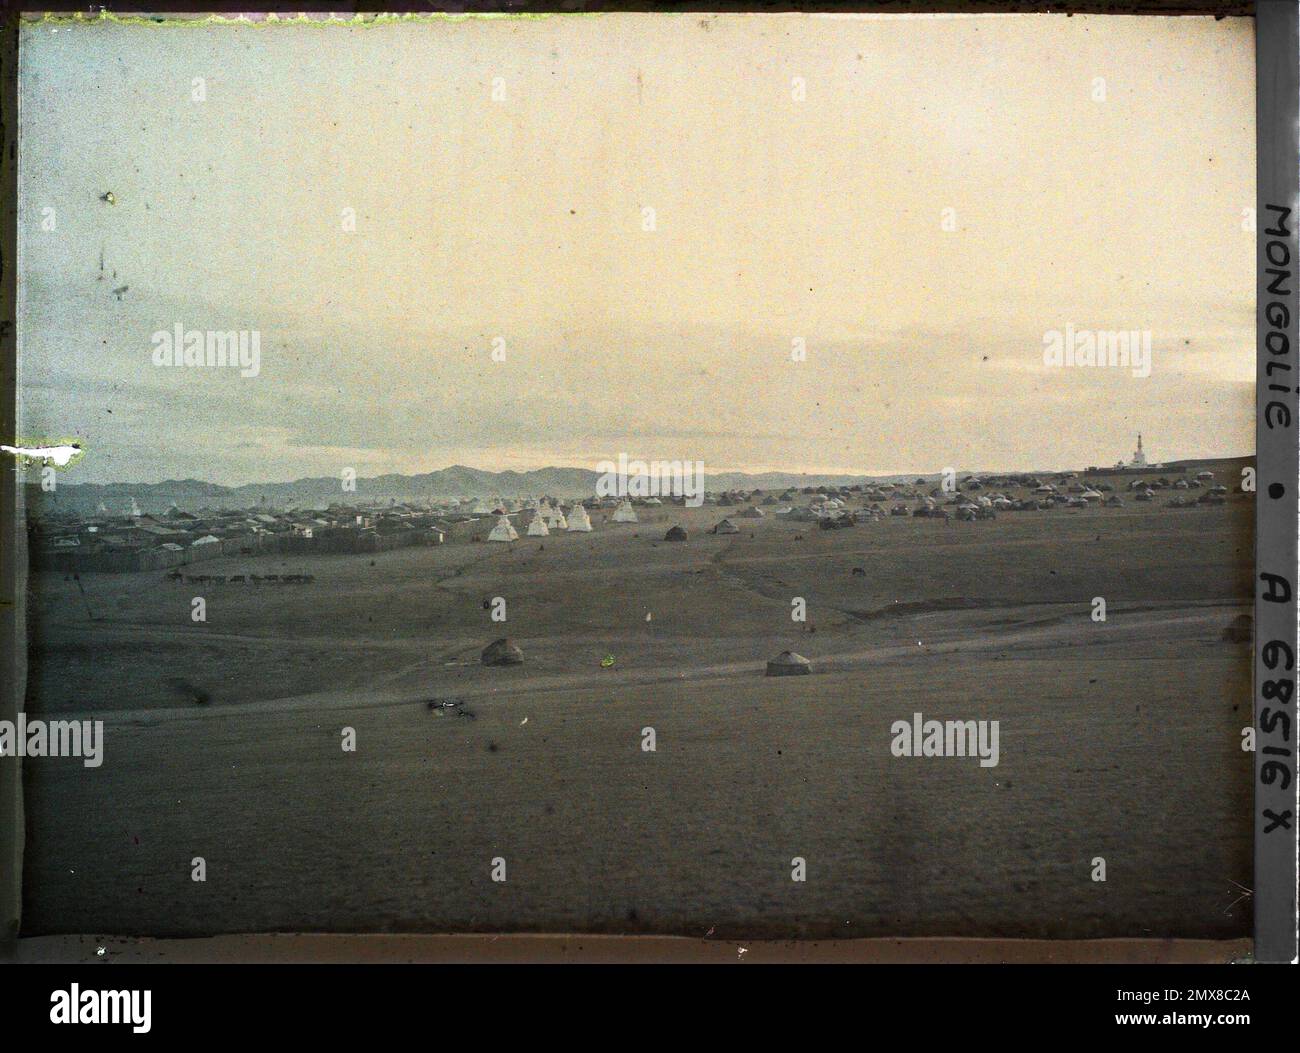 Orga, Mongolie vue panoramique de l'extrémité ouest de Baruun Khüree ou Gandantegchinlin, la ville des Lamas , 1913 - Mongolie - Stéphane Passet - (6-25 juillet) Banque D'Images